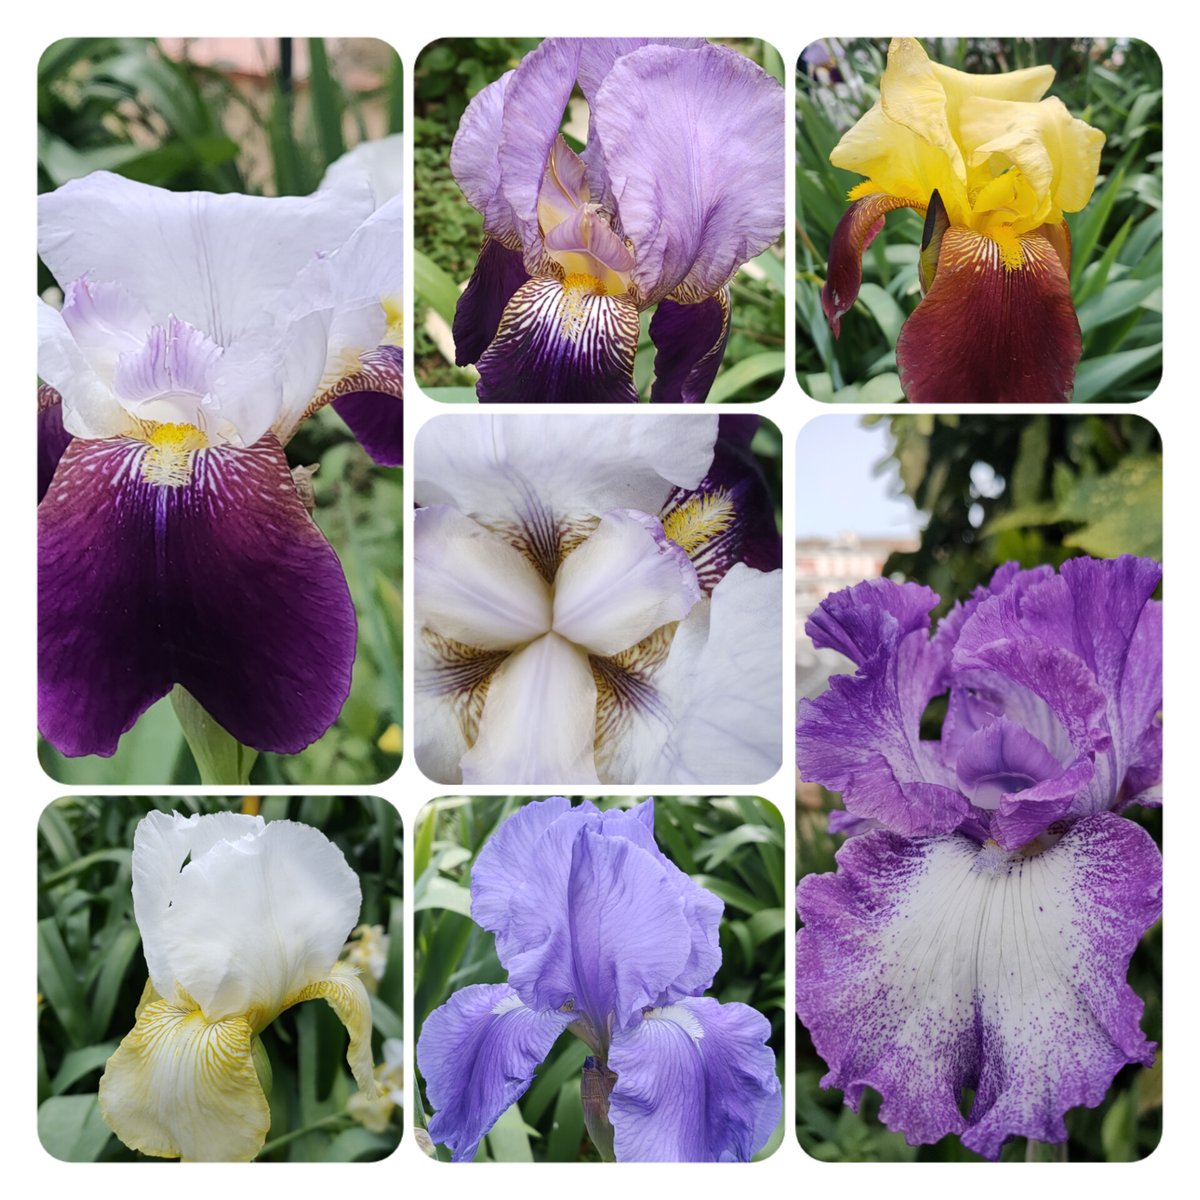 Jamais les iris n'ont été aussi beaux que ce printemps
#tresorsdujardin #homesweethome #cotedazurfrance #chasseusedenuages #frenchriviera #cotedazur #frommywindow